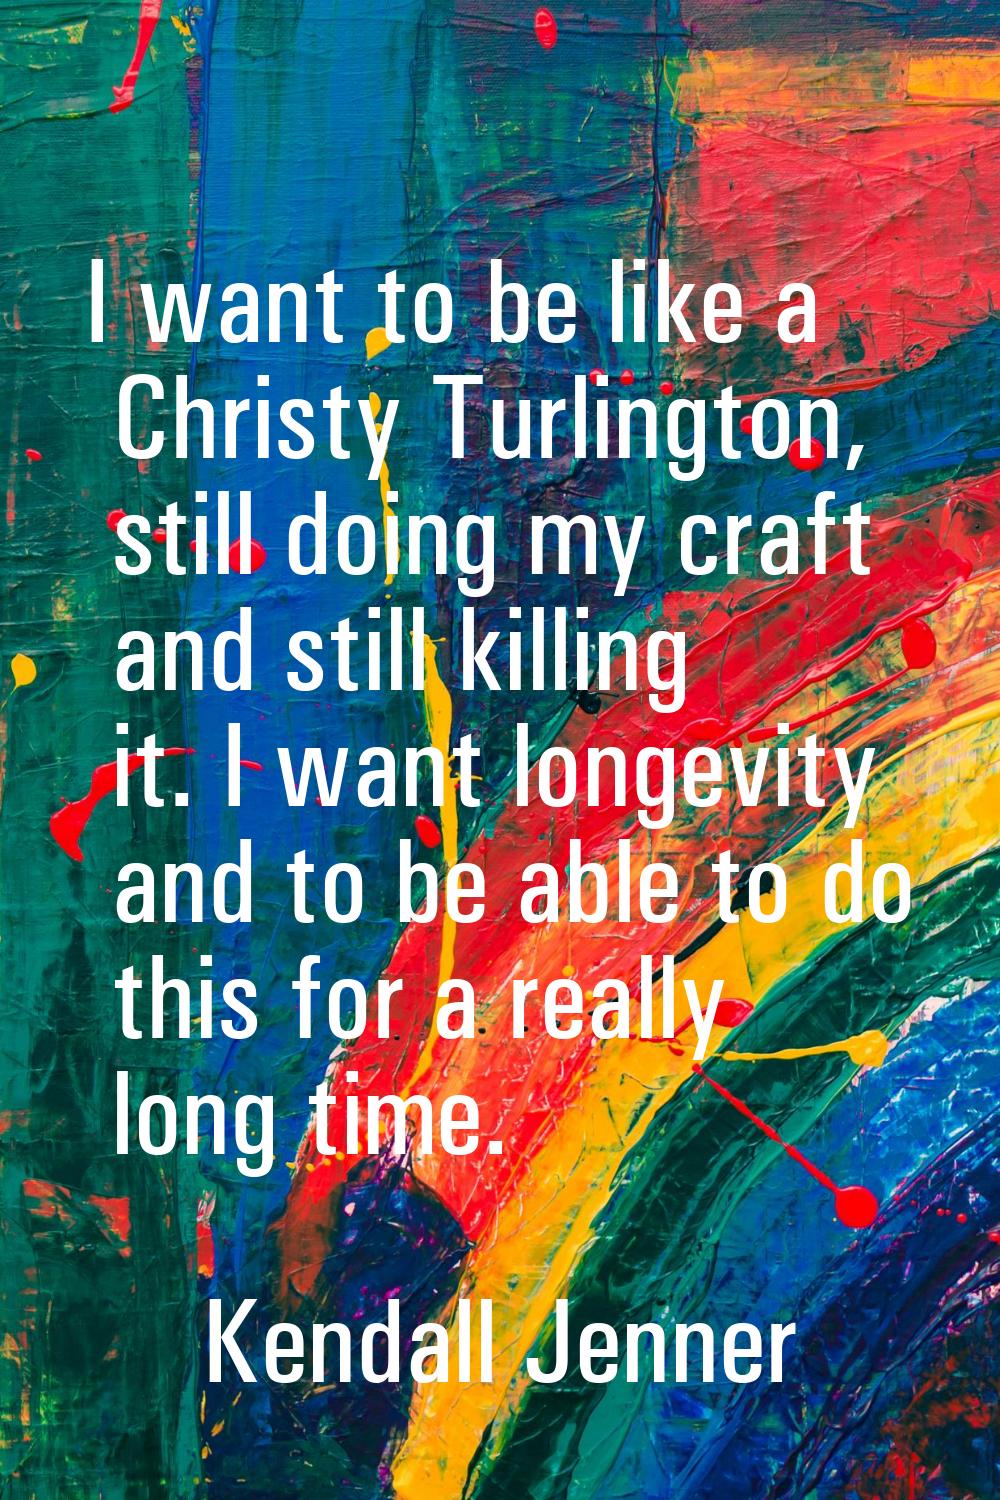 I want to be like a Christy Turlington, still doing my craft and still killing it. I want longevity